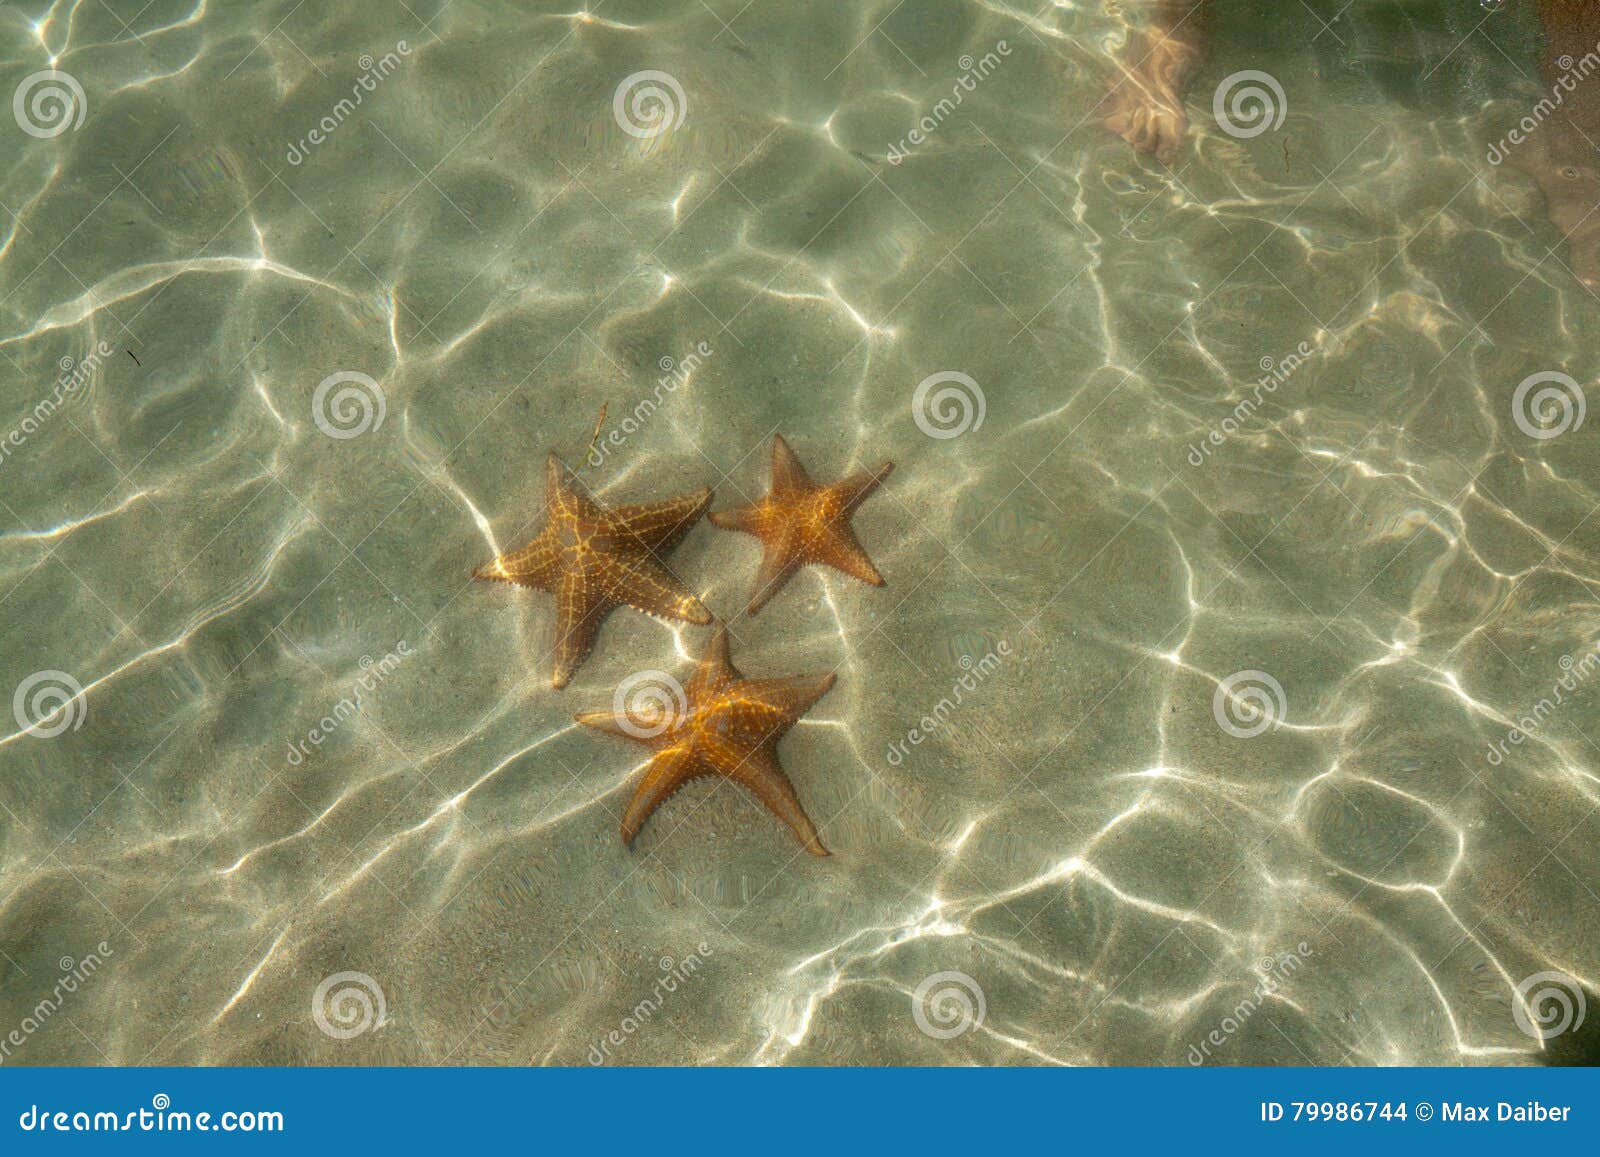 starfish at the starfishbeach bocas del toro